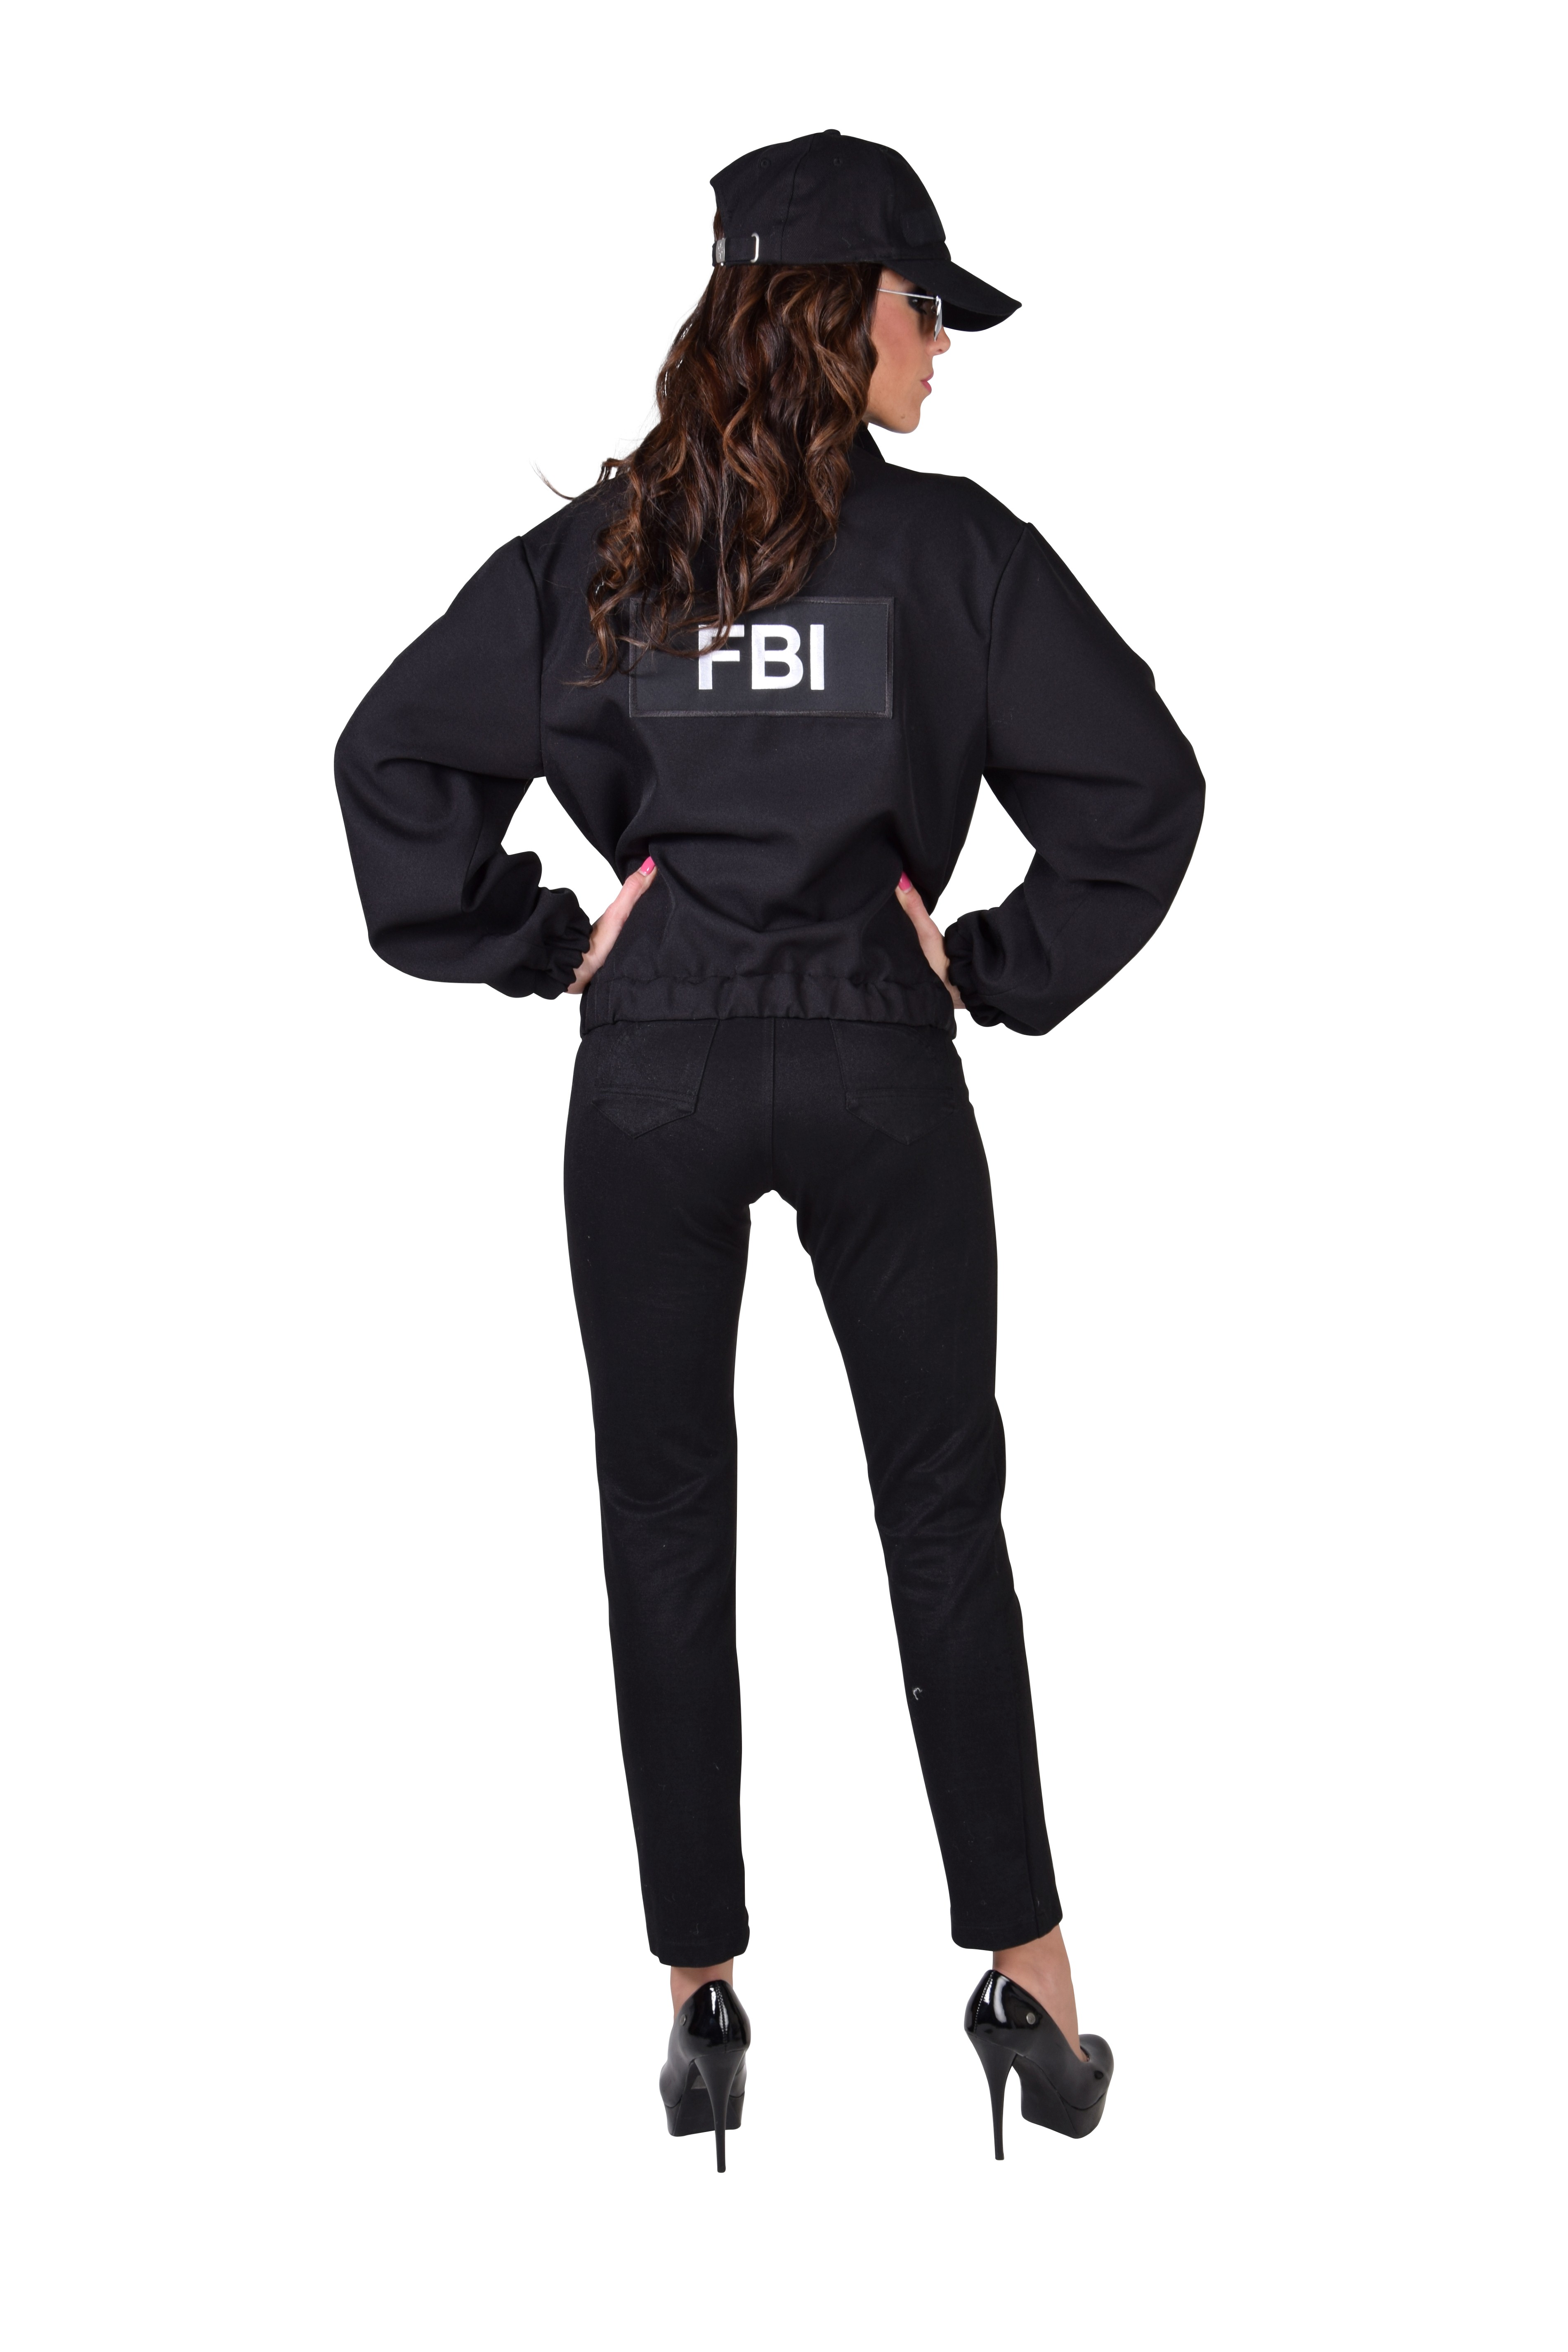 Jasje FBI Agente